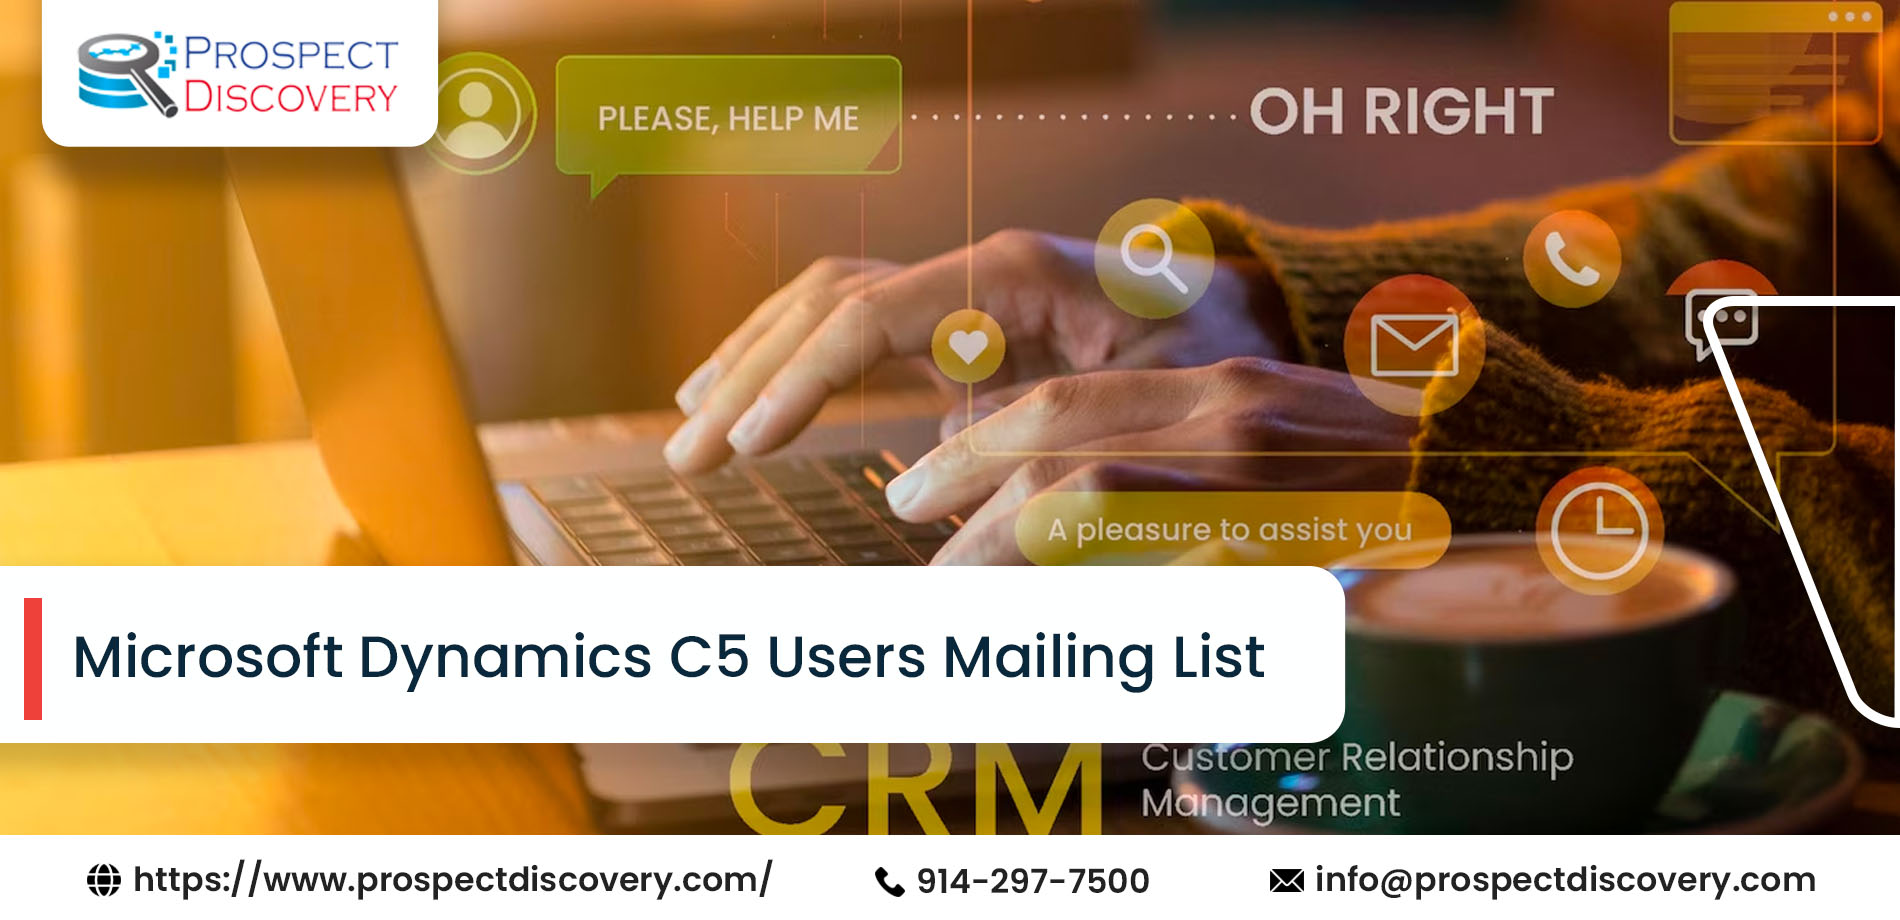 Microsoft Dynamics C5 Users Mailing List | Microsoft Dynamics C% Customers List